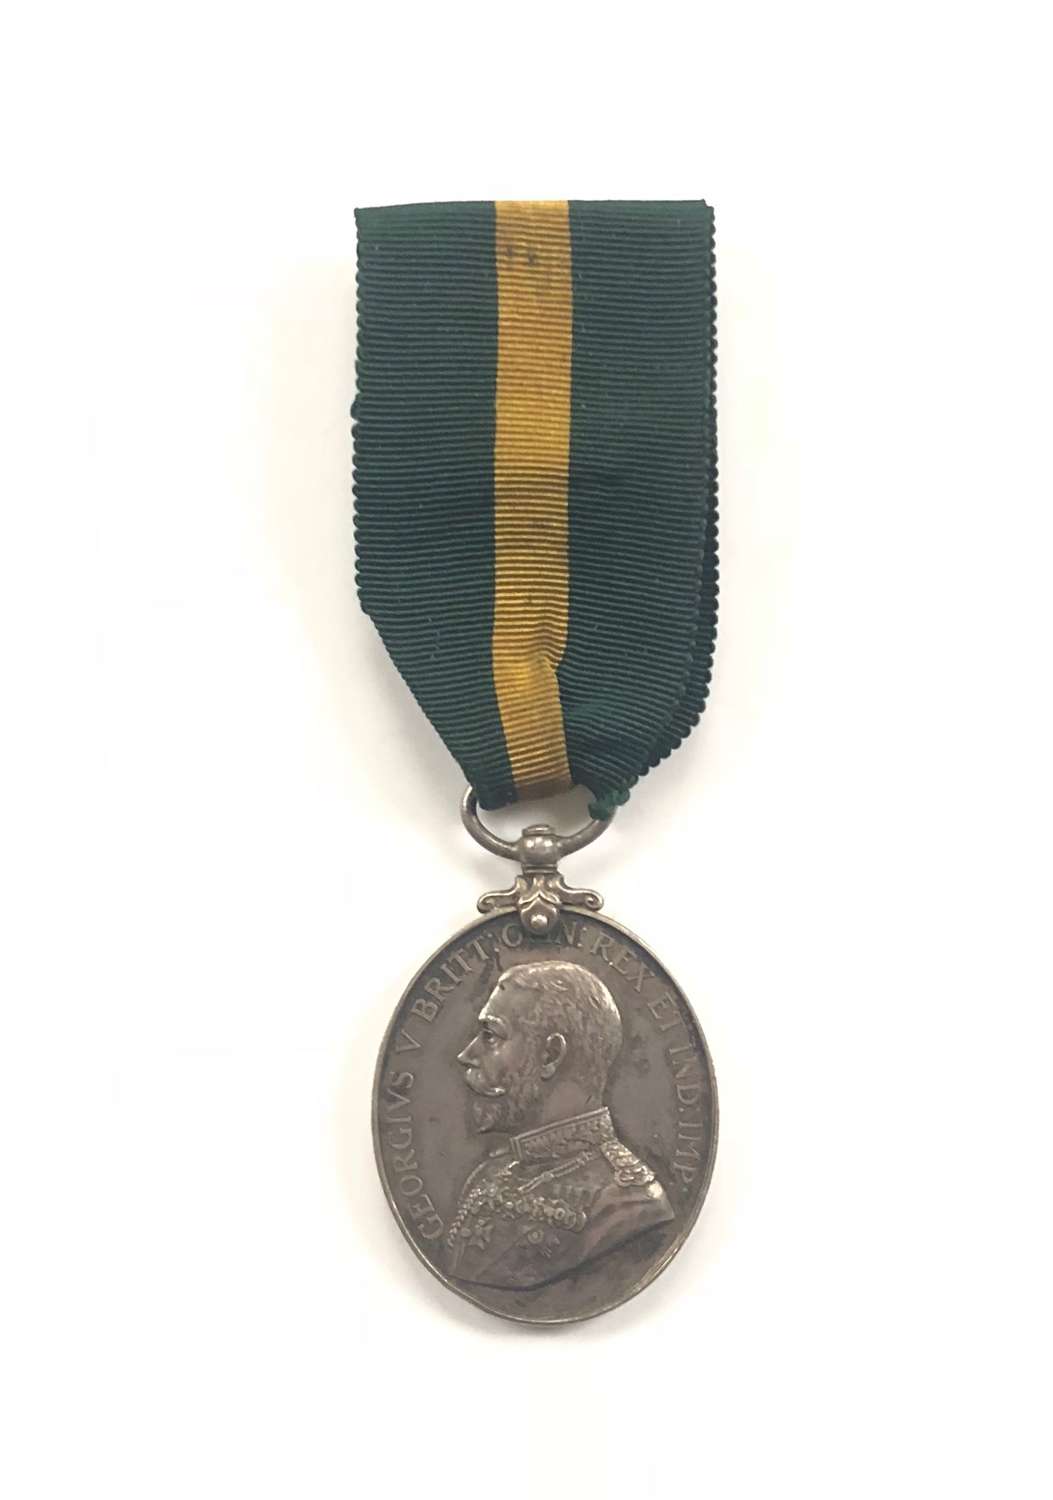 4th Bn Gordon Highlanders Territorial Force Efficiency Medal.